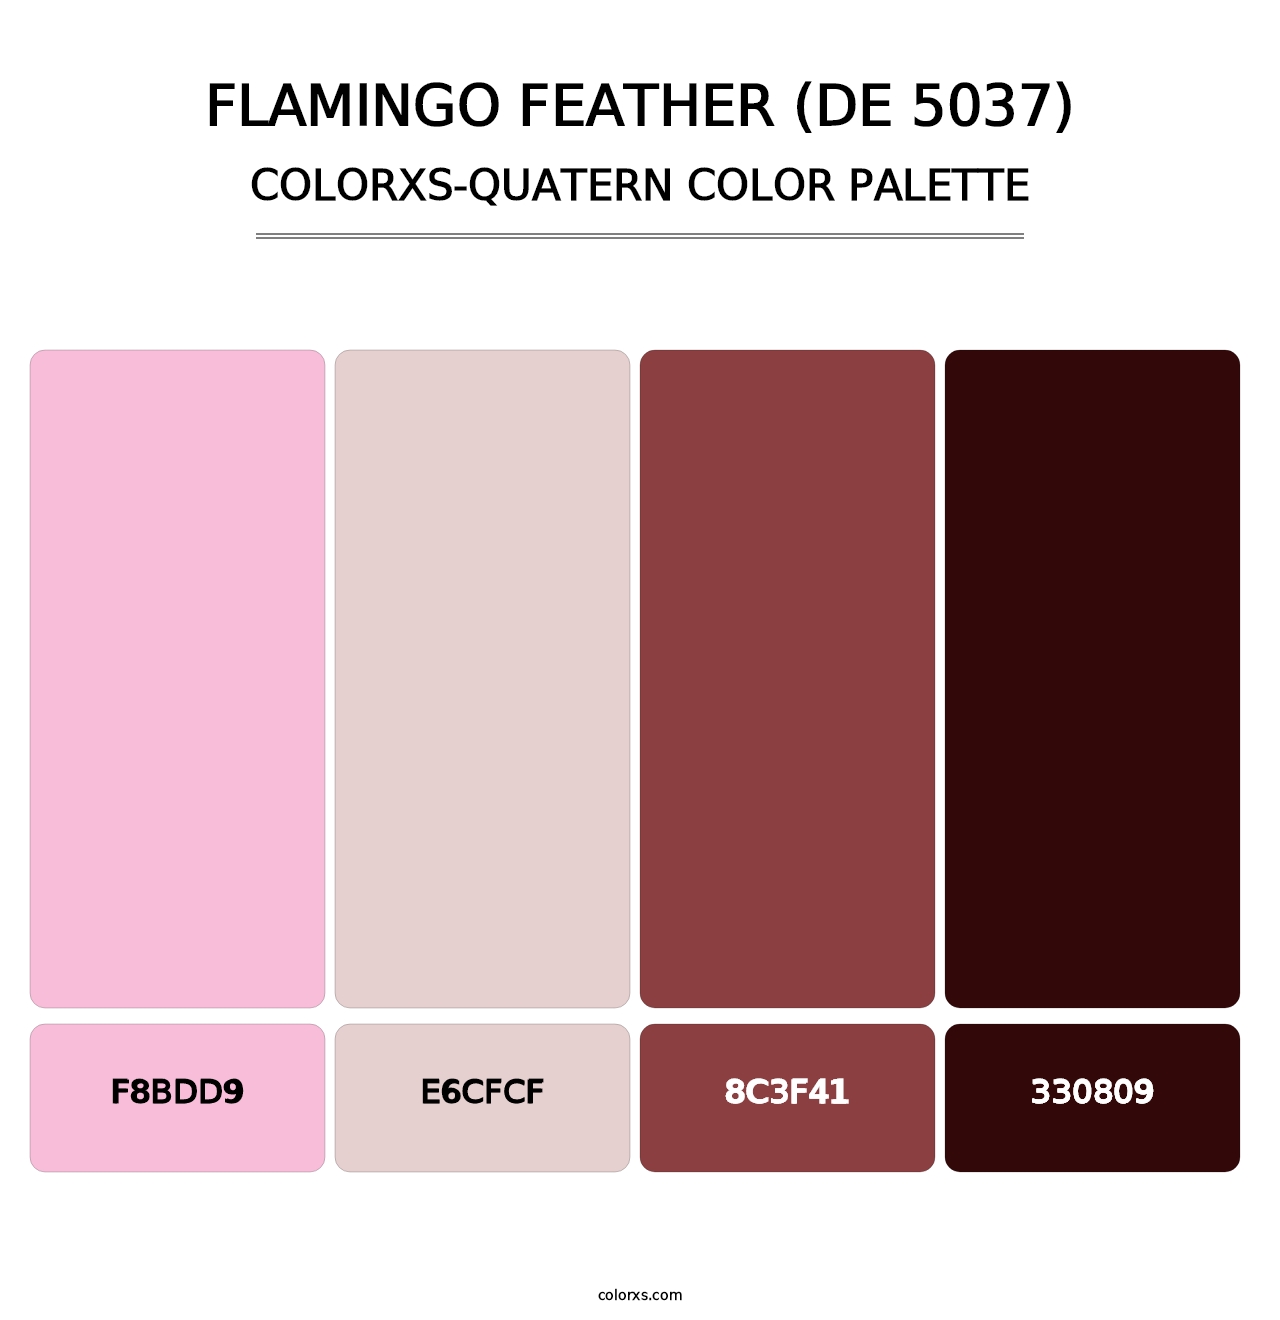 Flamingo Feather (DE 5037) - Colorxs Quatern Palette